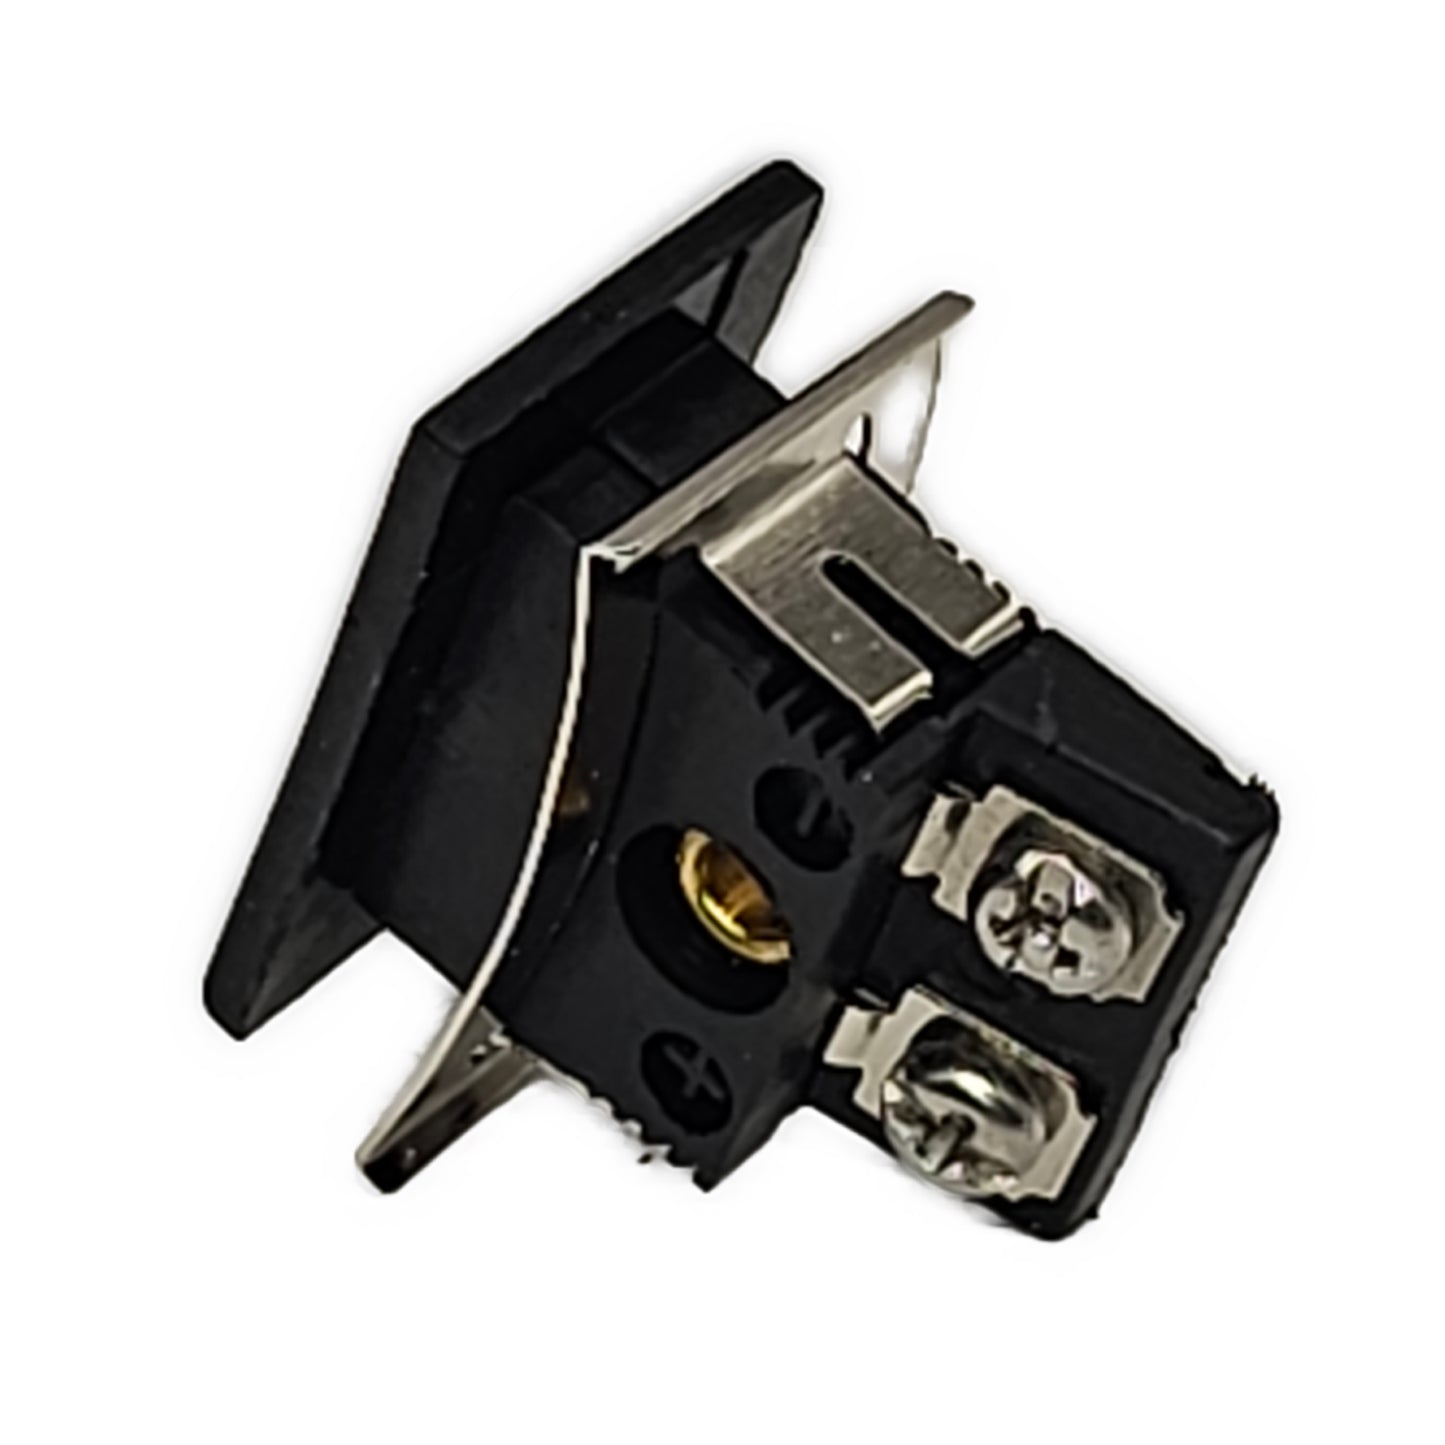 Panel Mount Connector - Mini Female Jack with Adjustable Lock Tab